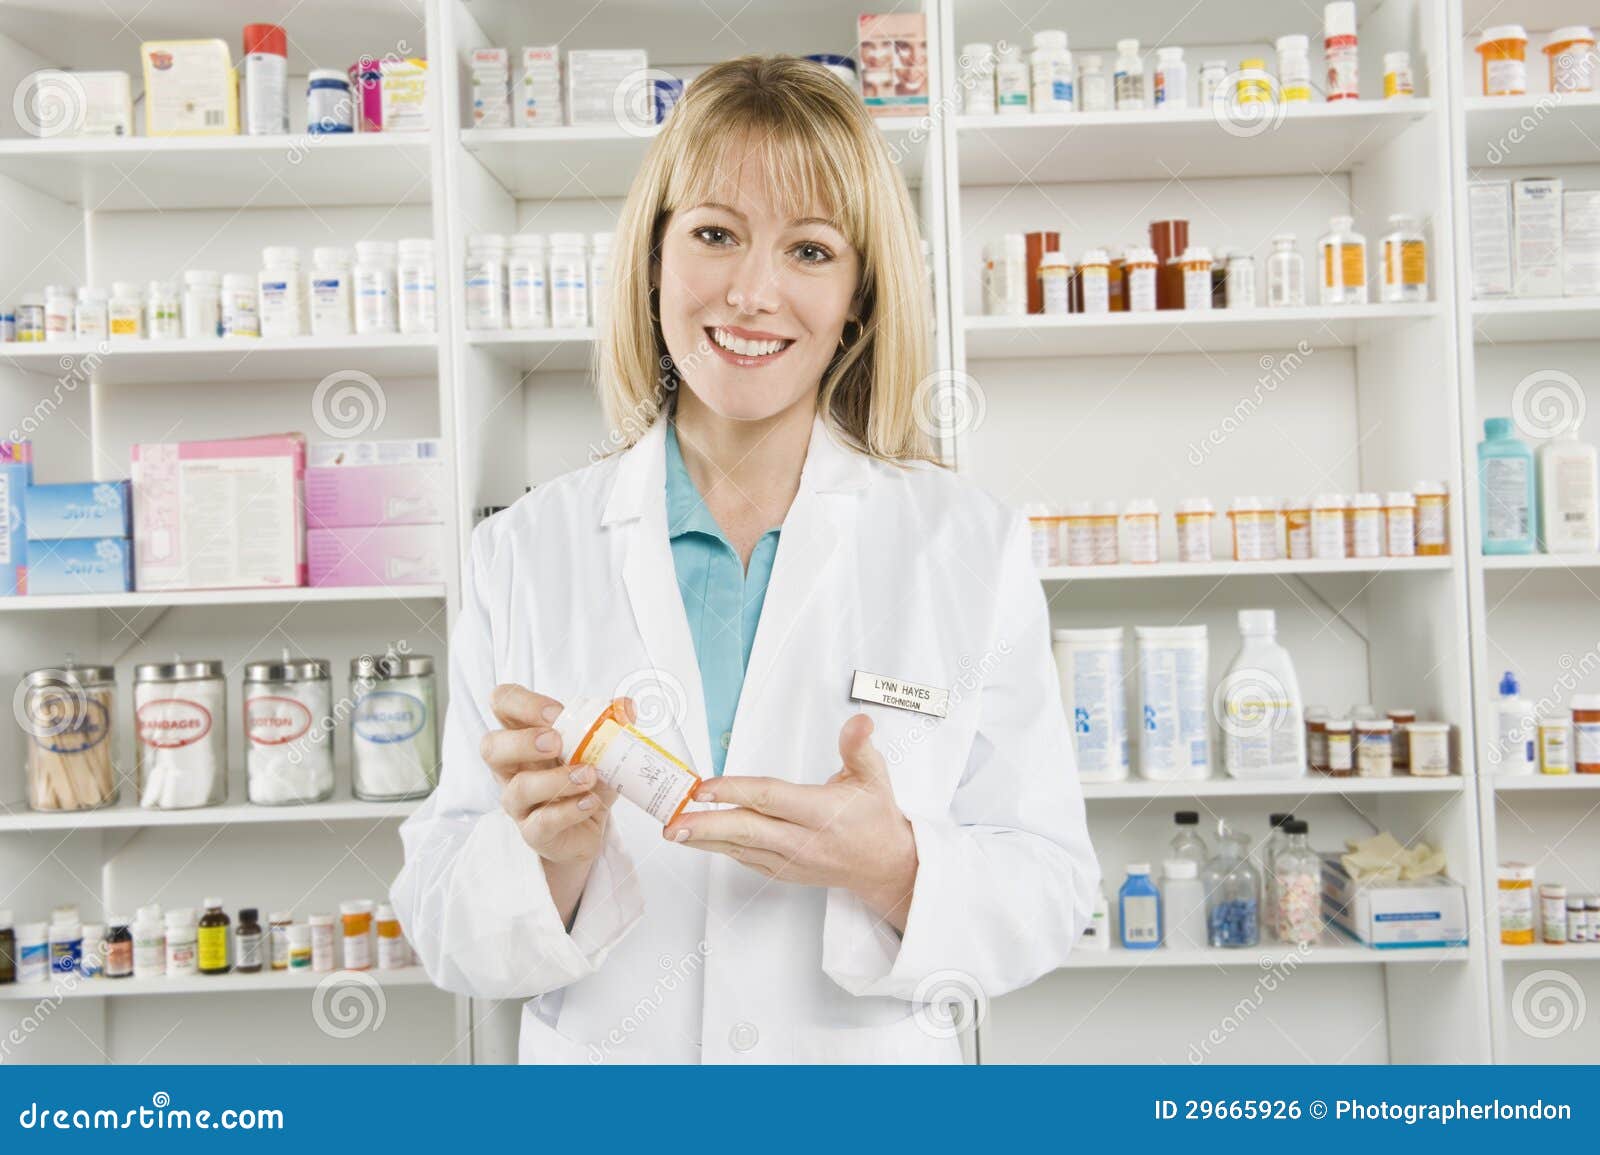 portrait of female pharmacist